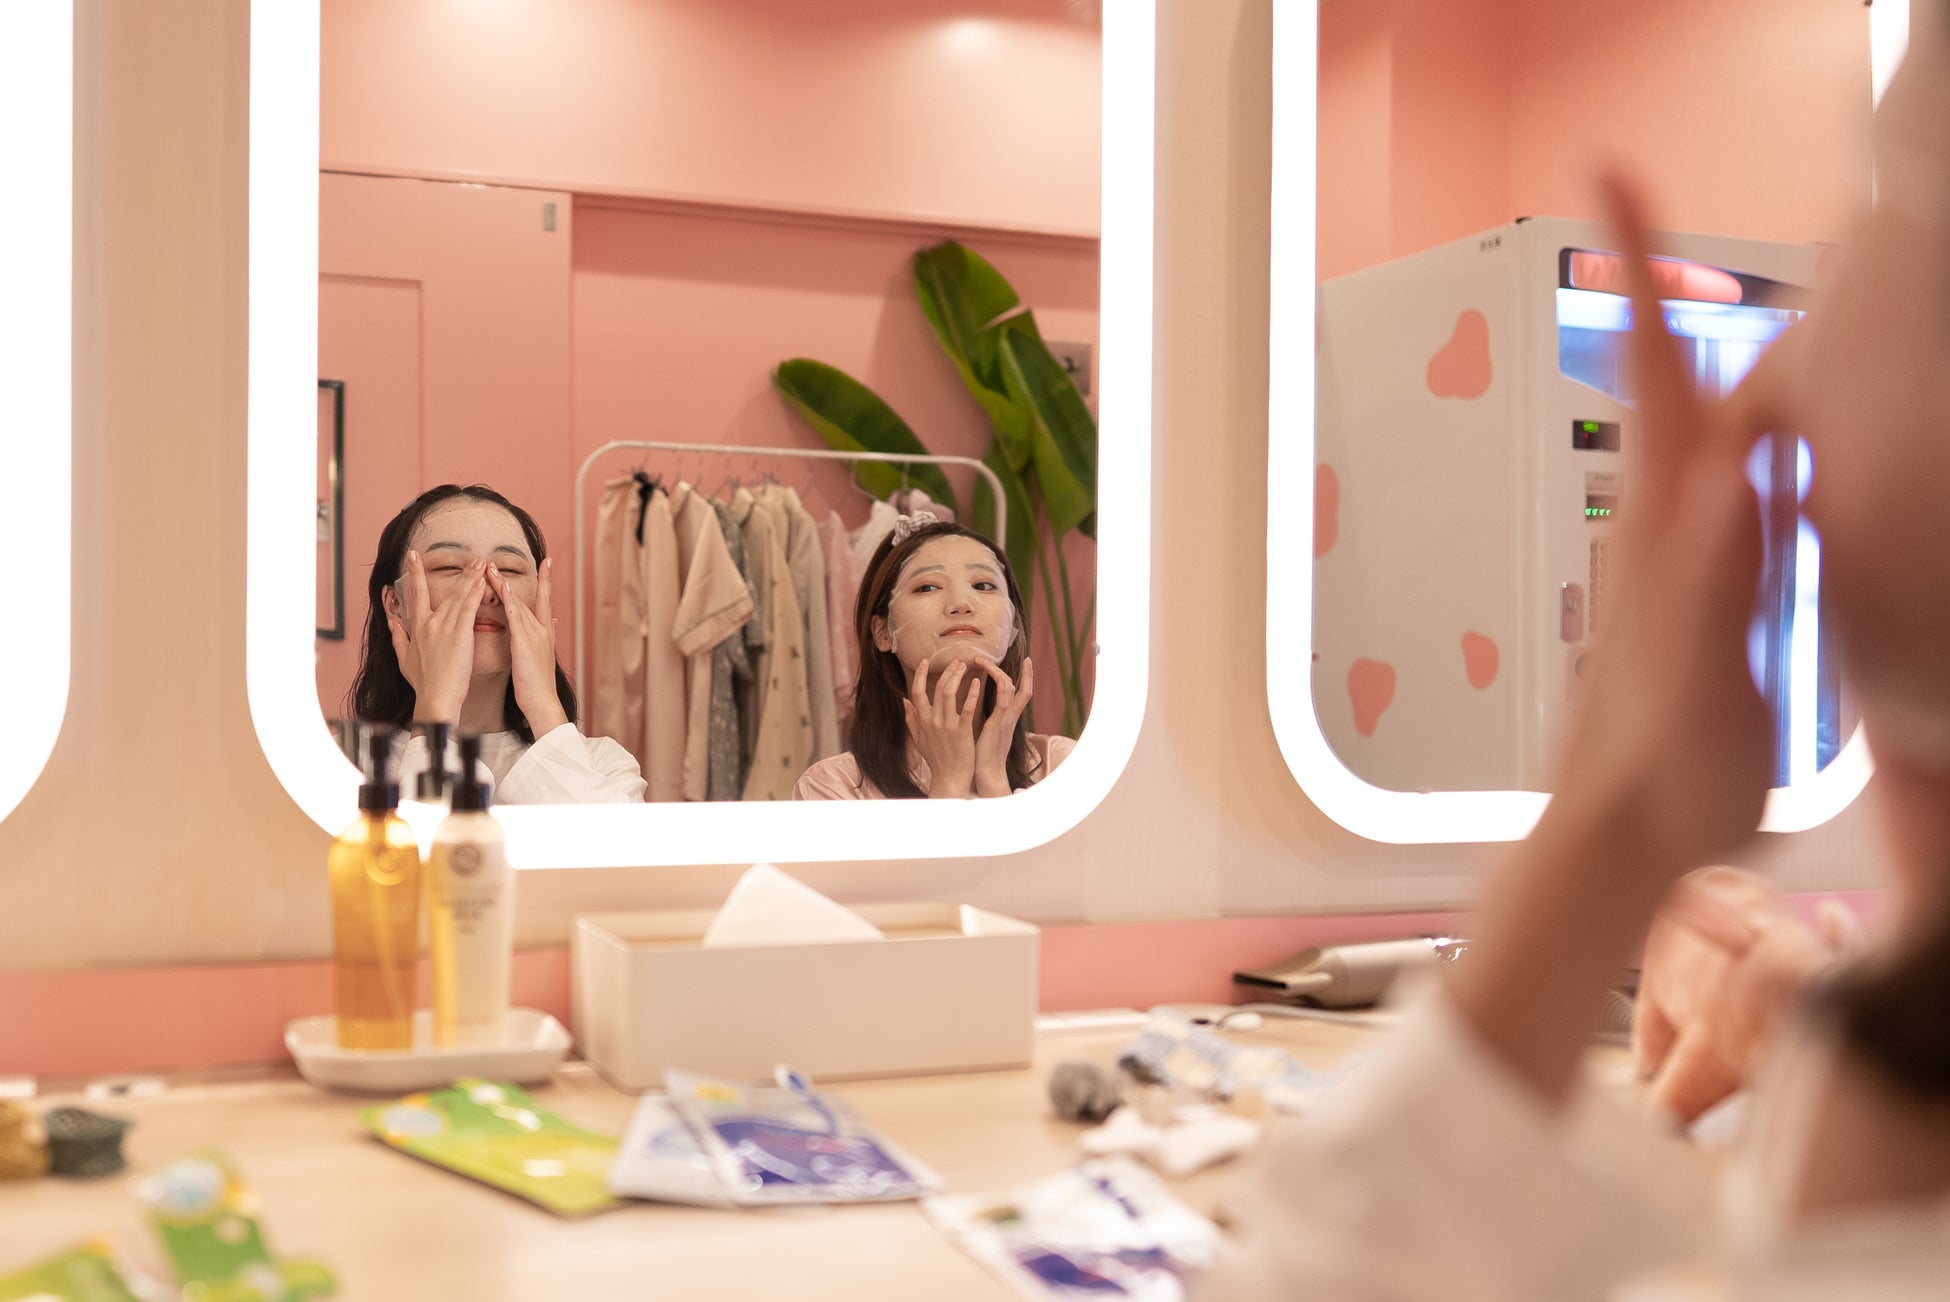 韓国発の人気美容コスメブランド「MEDIHEAL」とおふろcafe utataneがコラボ。限定アメニティの提供やサウナイベントを開催